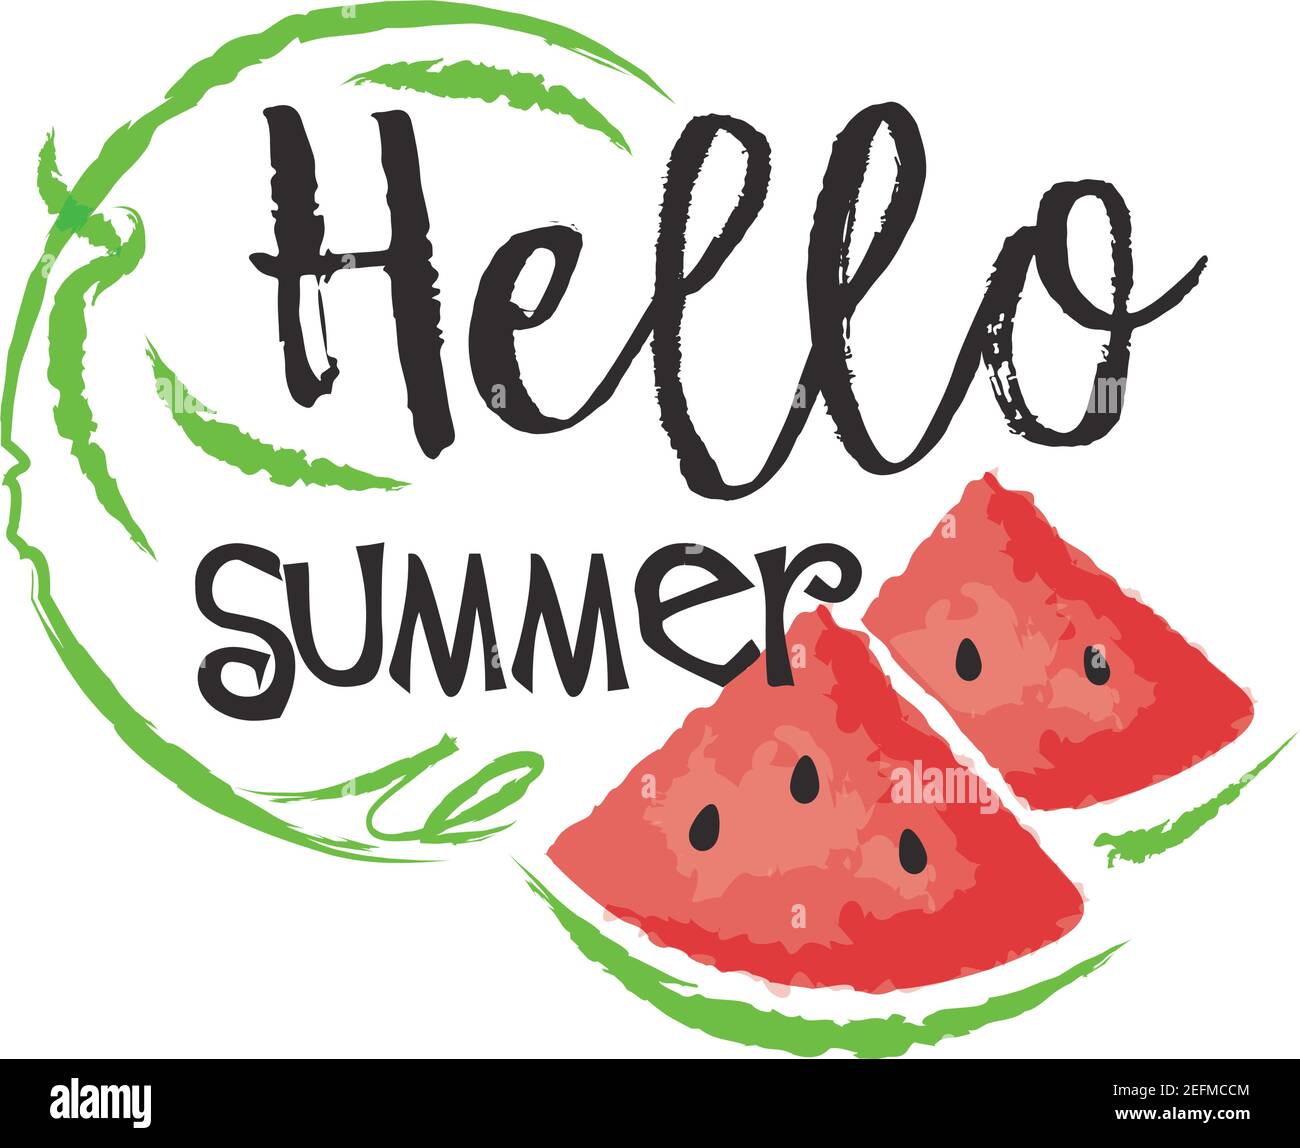 Wassermelone Obst Etikett und Aufkleber - Hallo Sommer. Vektorgrafik im Aquarellstil, für Grafik und Webdesign Stock Vektor